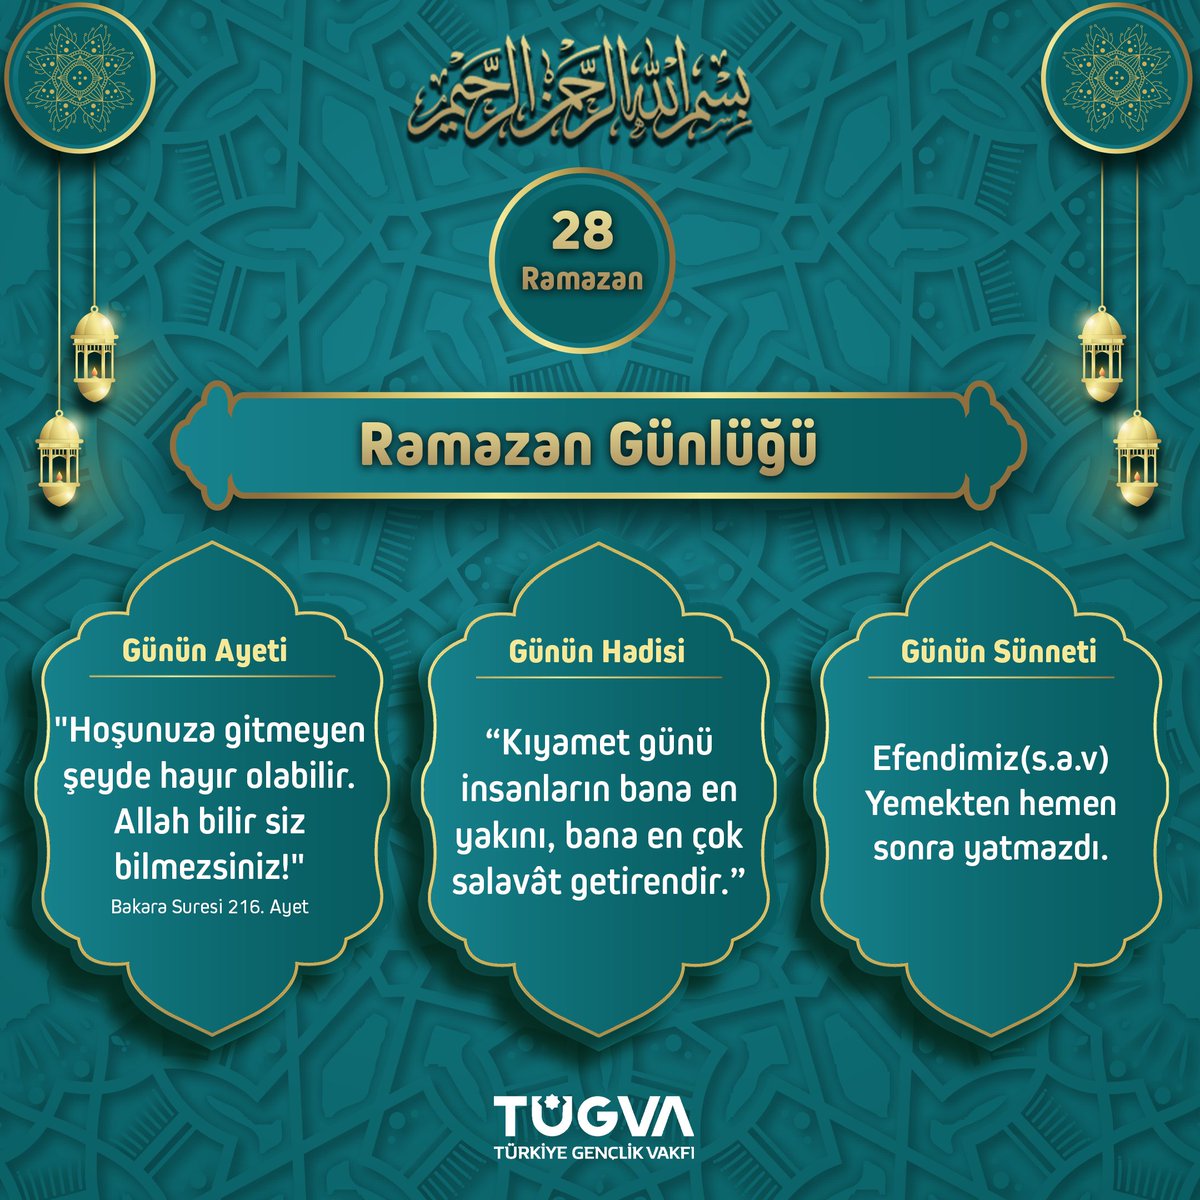 🗓️28 Ramazan 1445 Ramazan Günlüğünde bugün📌 #Ramazan #BirAyet #BirHadis #BirSünnet